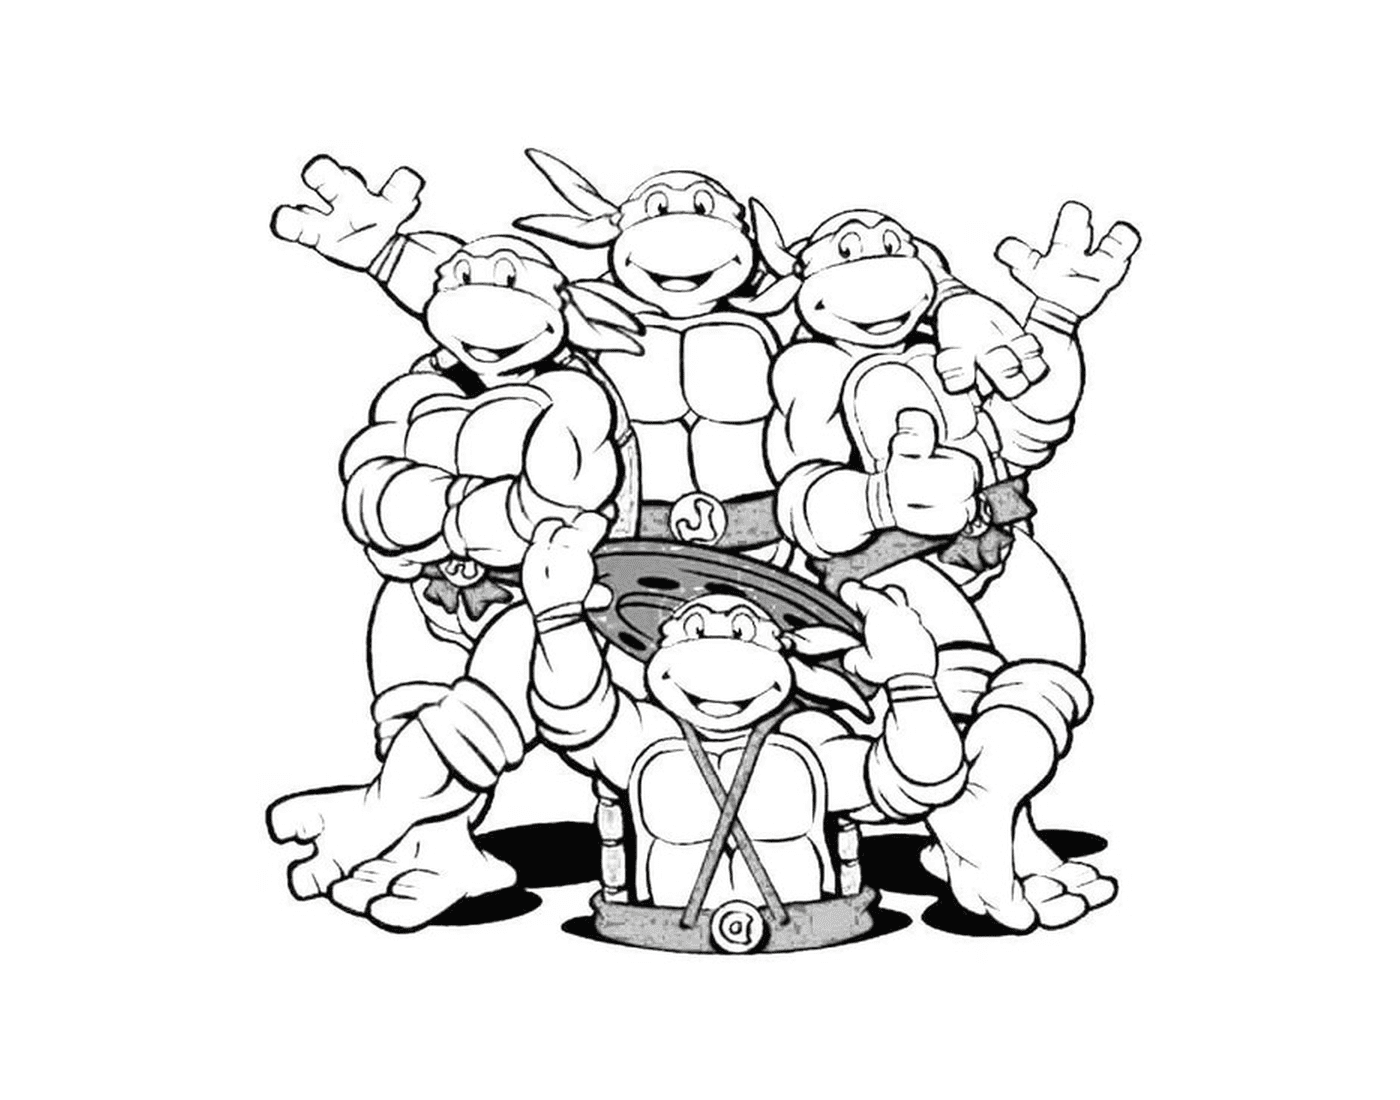  Fantastic team of ninja turtles 